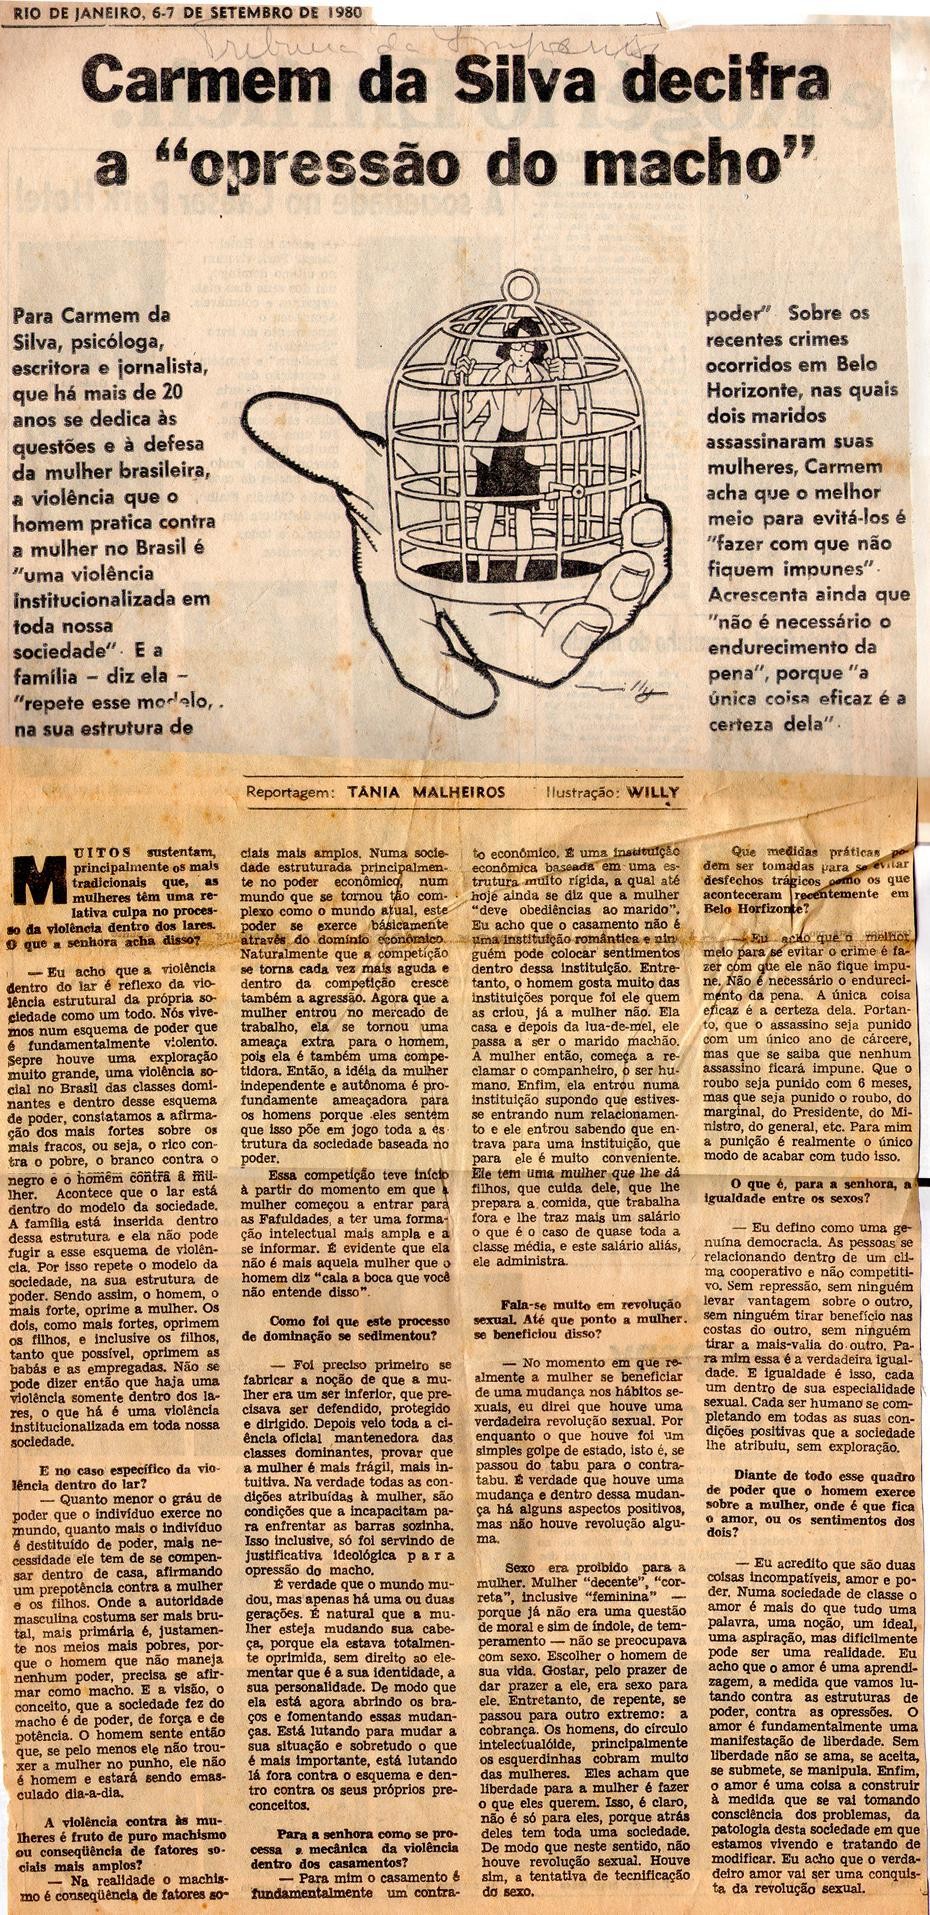 06 de Setembro de 1980 - Tribuna da Imprensa. Carmem da Silva decifra a "opressão do macho".